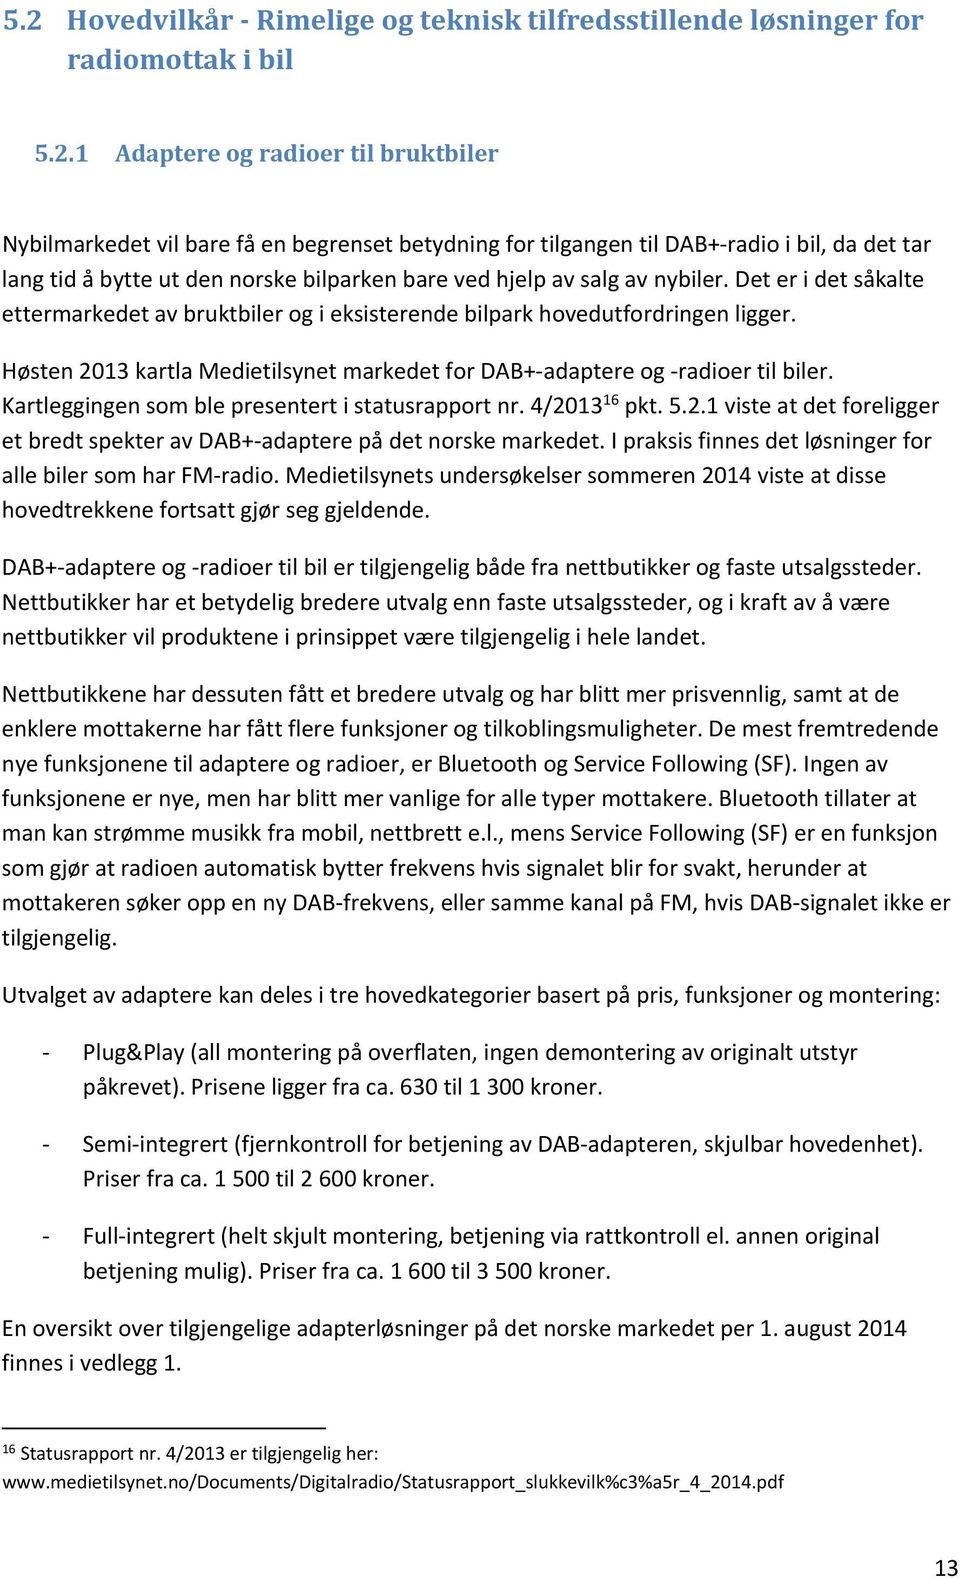 Høsten 2013 kartla Medietilsynet markedet for DAB+ adaptere og radioer til biler. Kartleggingen som ble presentert i statusrapport nr. 4/2013 16 pkt. 5.2.1 viste at det foreligger et bredt spekter av DAB+ adaptere på det norske markedet.